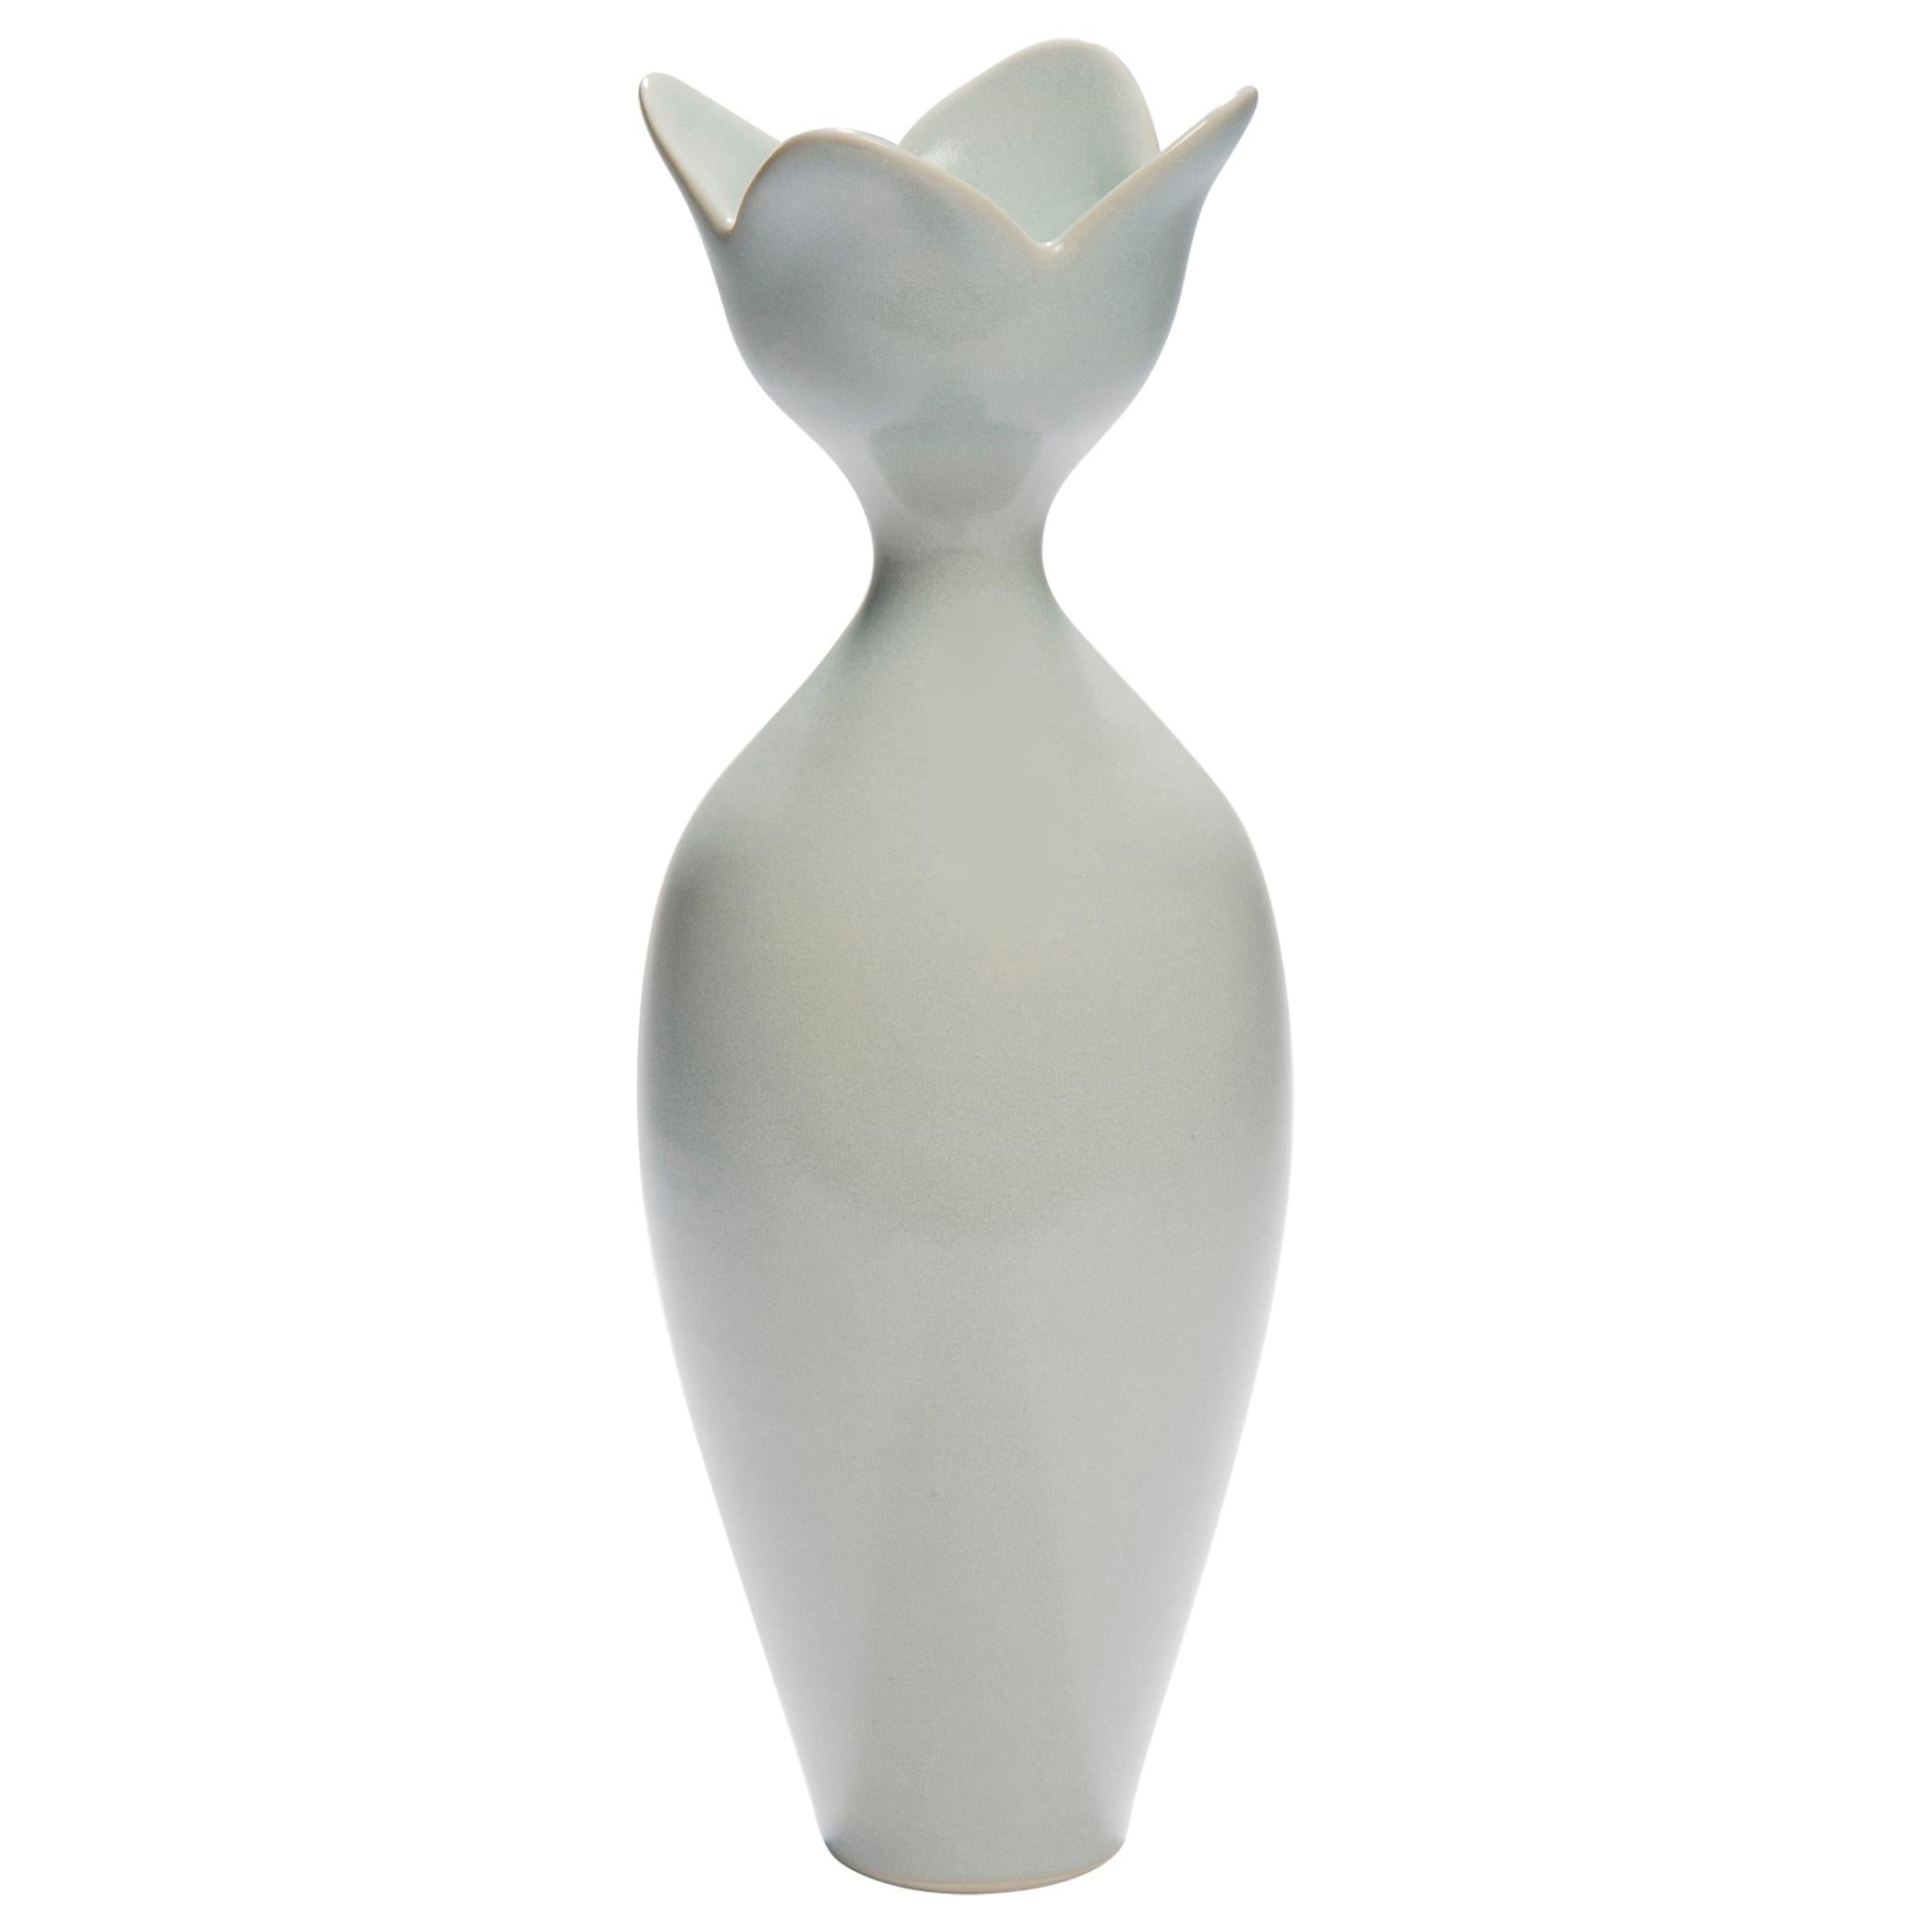 Pale Blue Flower, a Unique Celadon & Pale Blue Porcelain Vase by Vivienne Foley